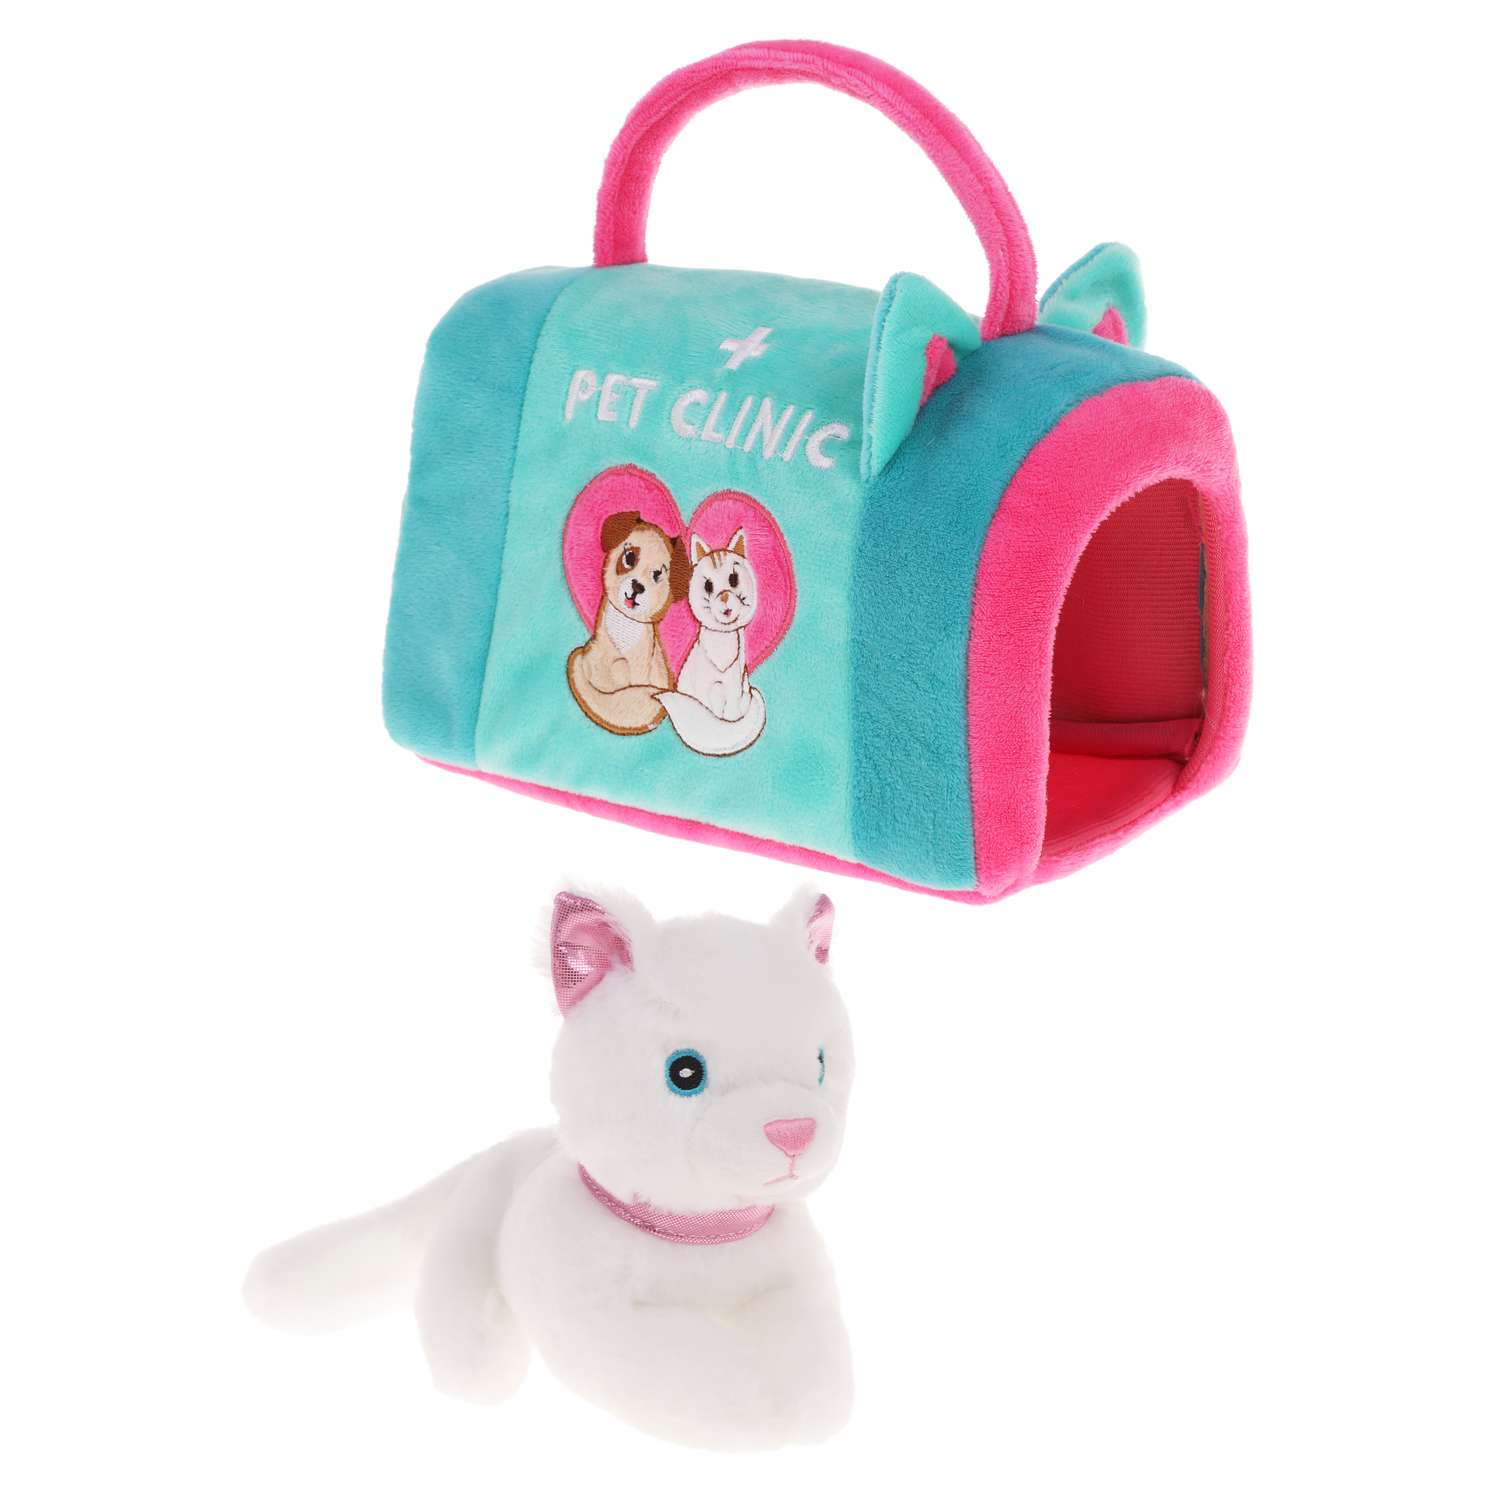 Мягкая игрушка детская Fluffy Family котенок с сумкой-переноской Pet clinic - фото 2